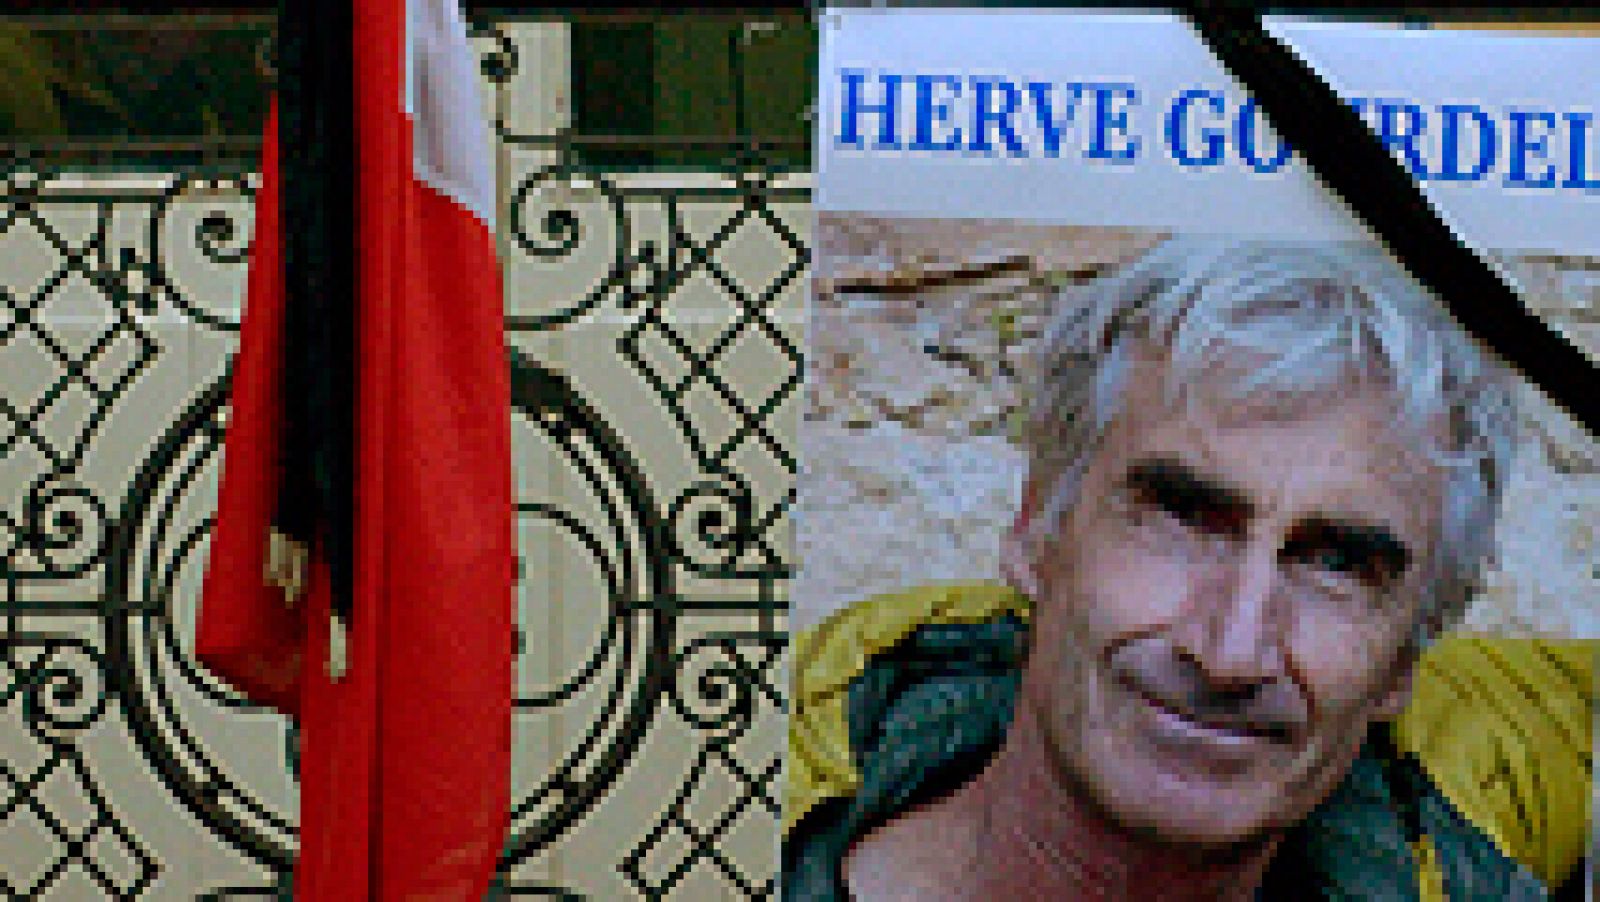  El asesinato del ciudadano francés Pierre Hervé Gourdel a manos de los yihadistas Soldados del Califato, aliados del Estado Islámico (EI), supone la aparición en el Magreb de este grupo terrorista escindido de Al Qaeda que hasta ahora se había limitado a actuar en Siria e Irak.